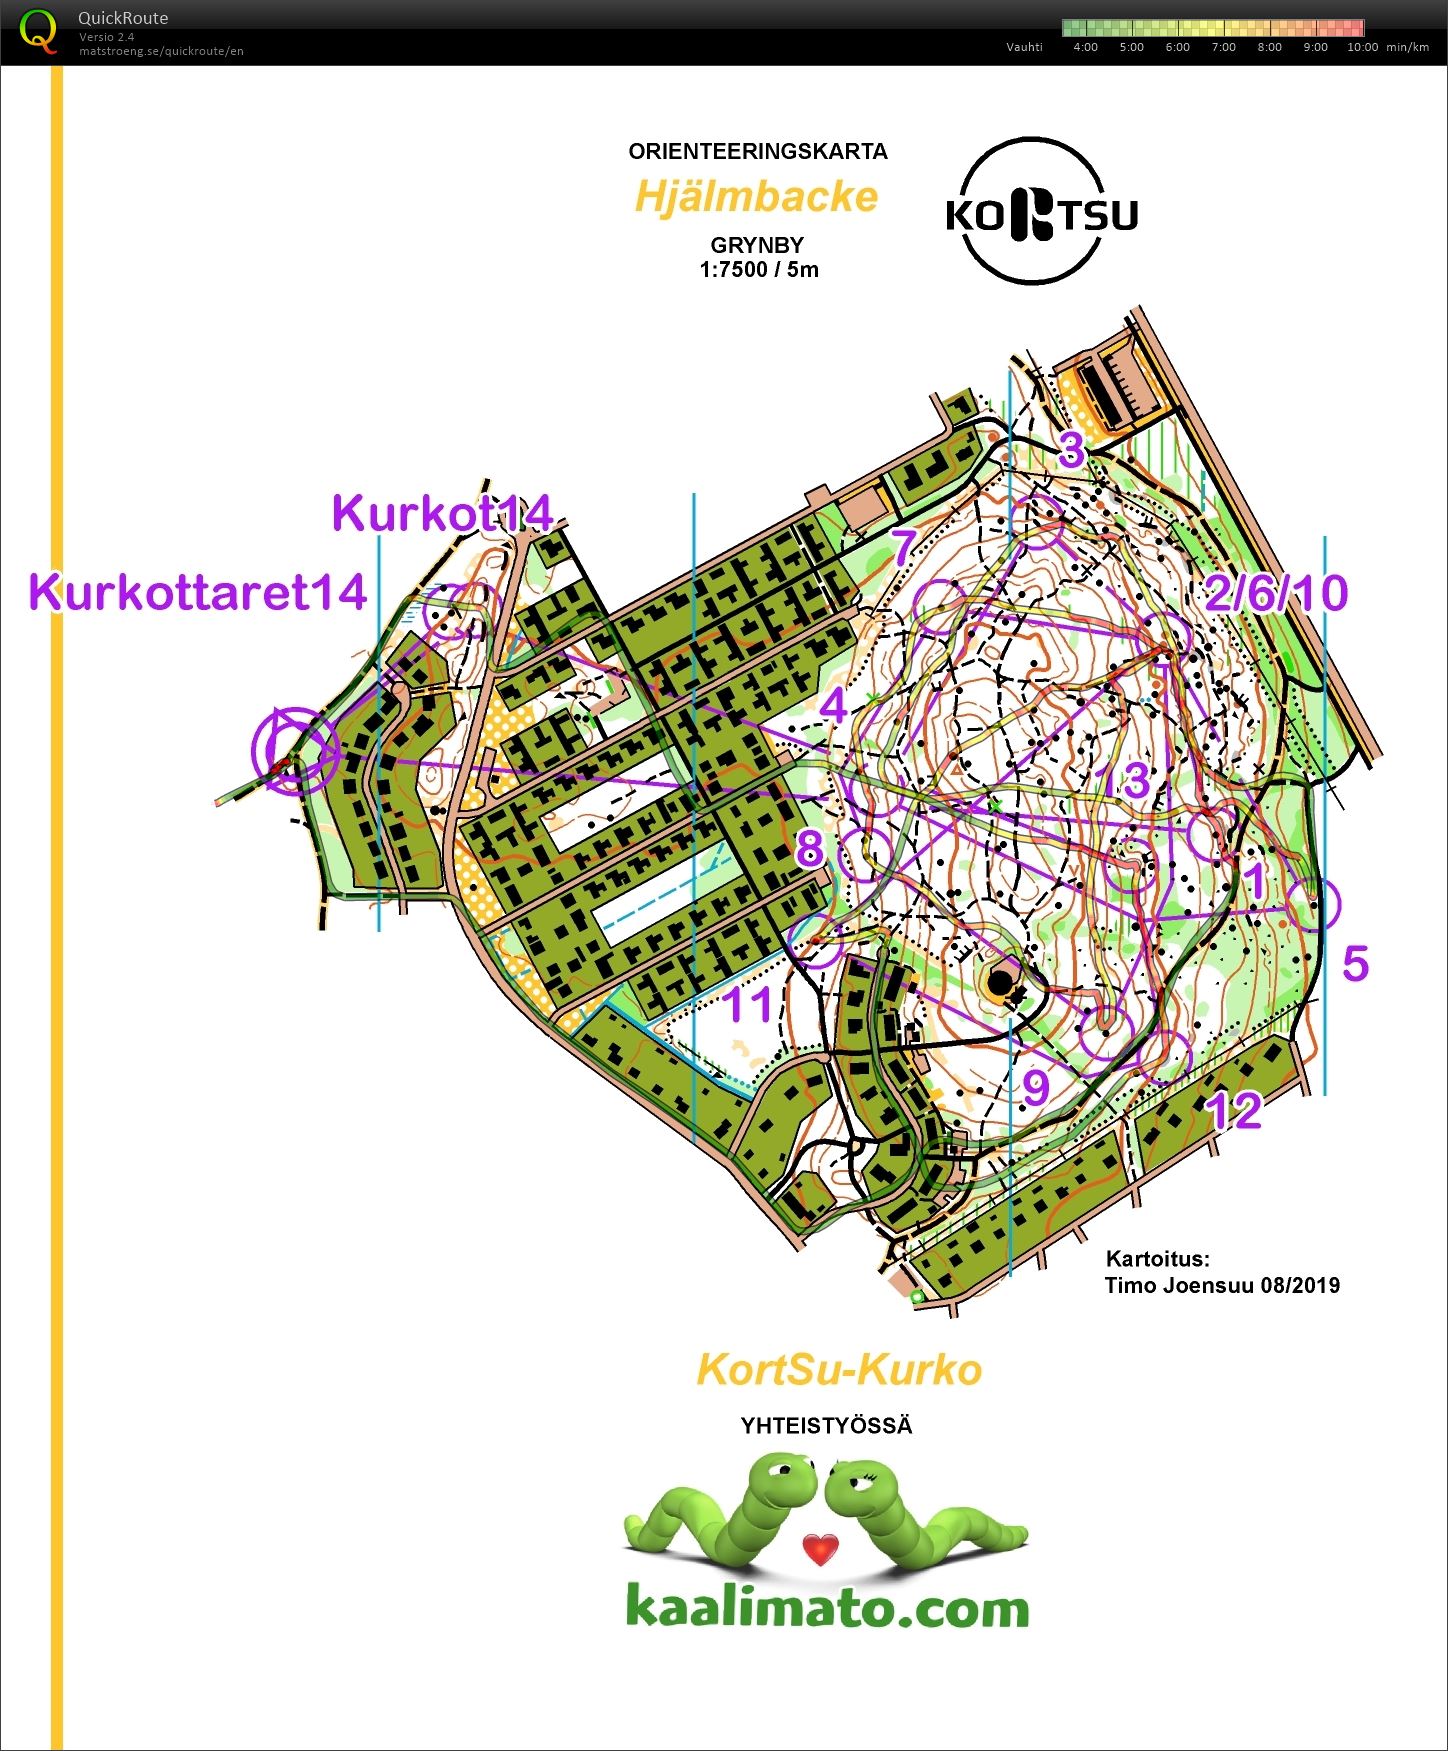 KortSu-Kurko (2019-11-14)